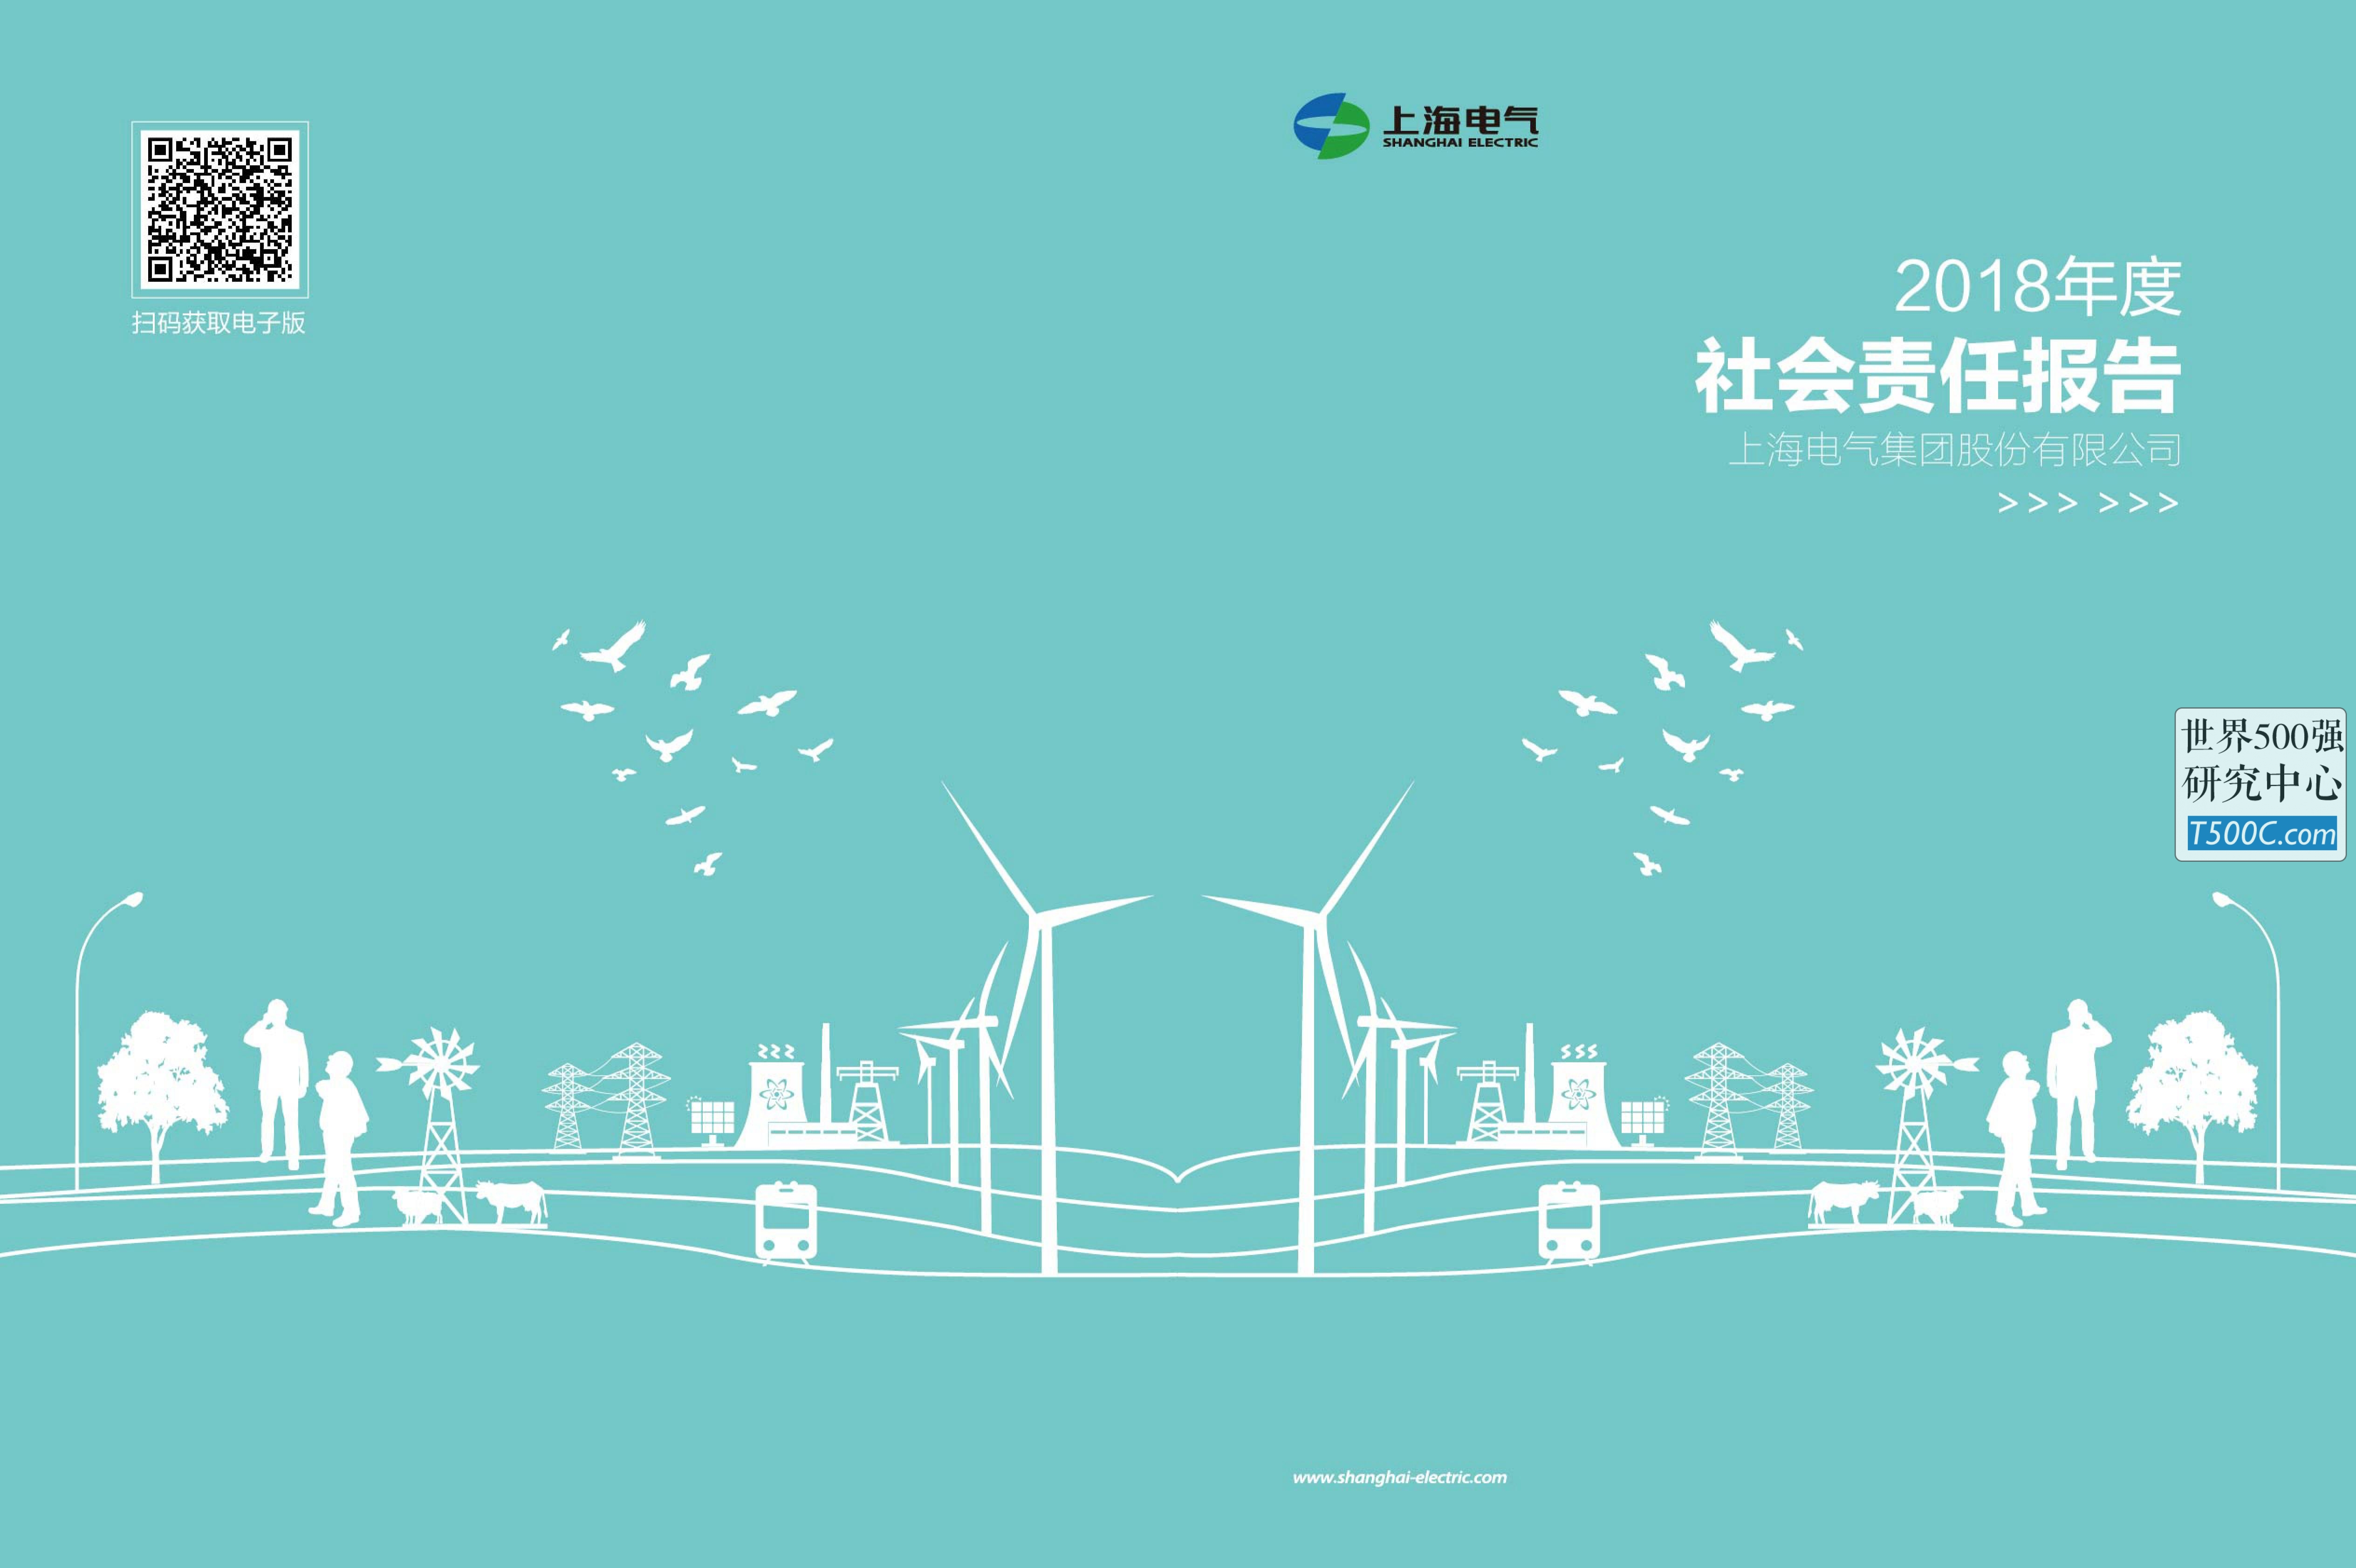 上海电气集团_企业社会责任报告CSR_2018